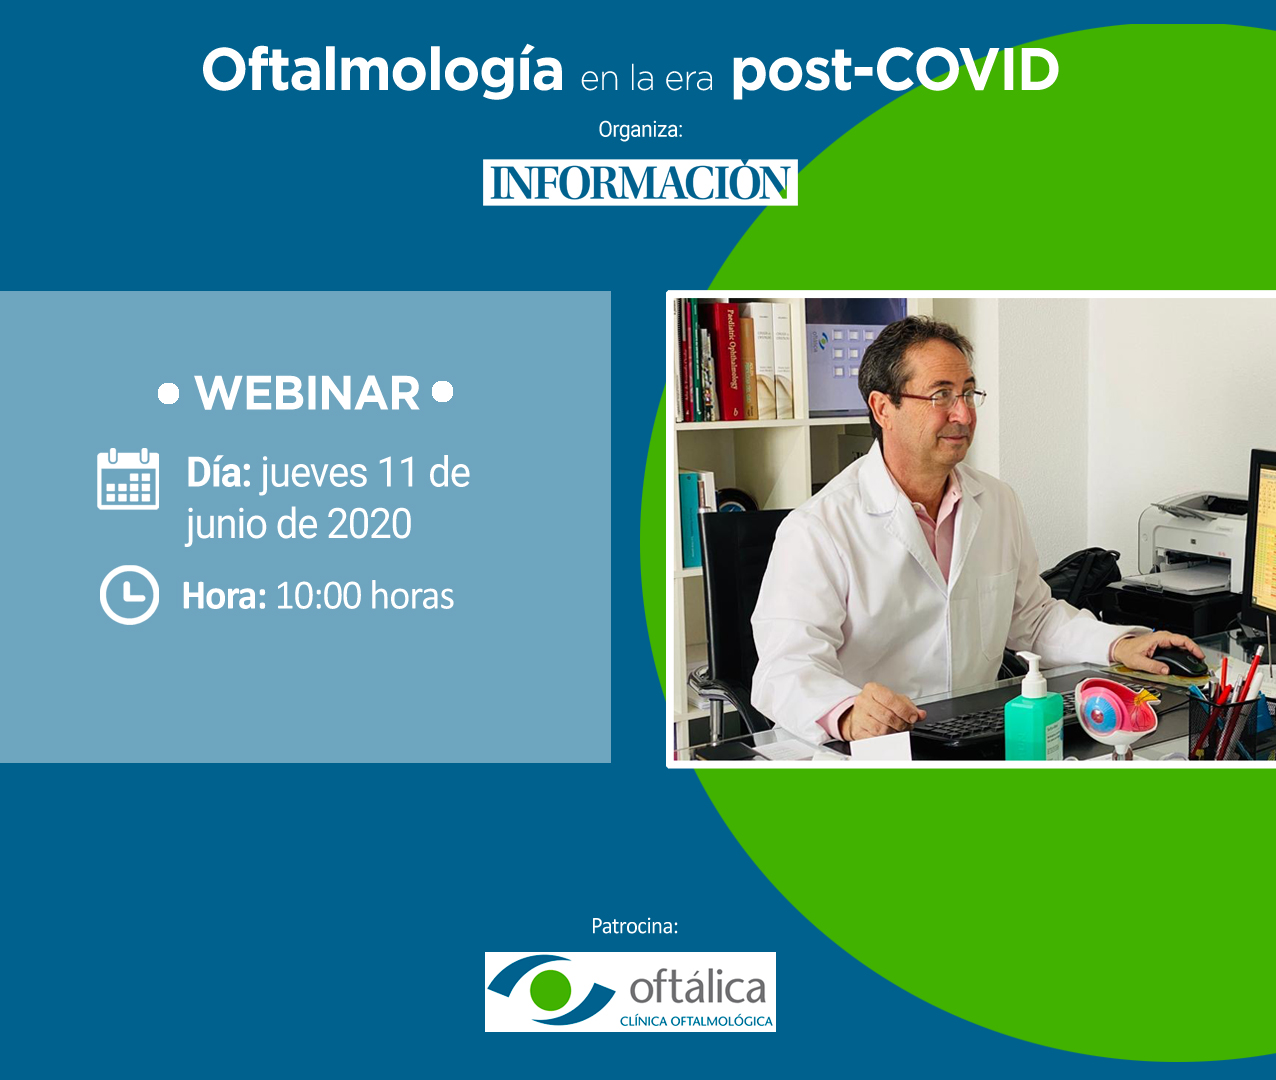 WEBINAR: Oftalmología en la era post-COVID, con el Dr. Enrique Chipont